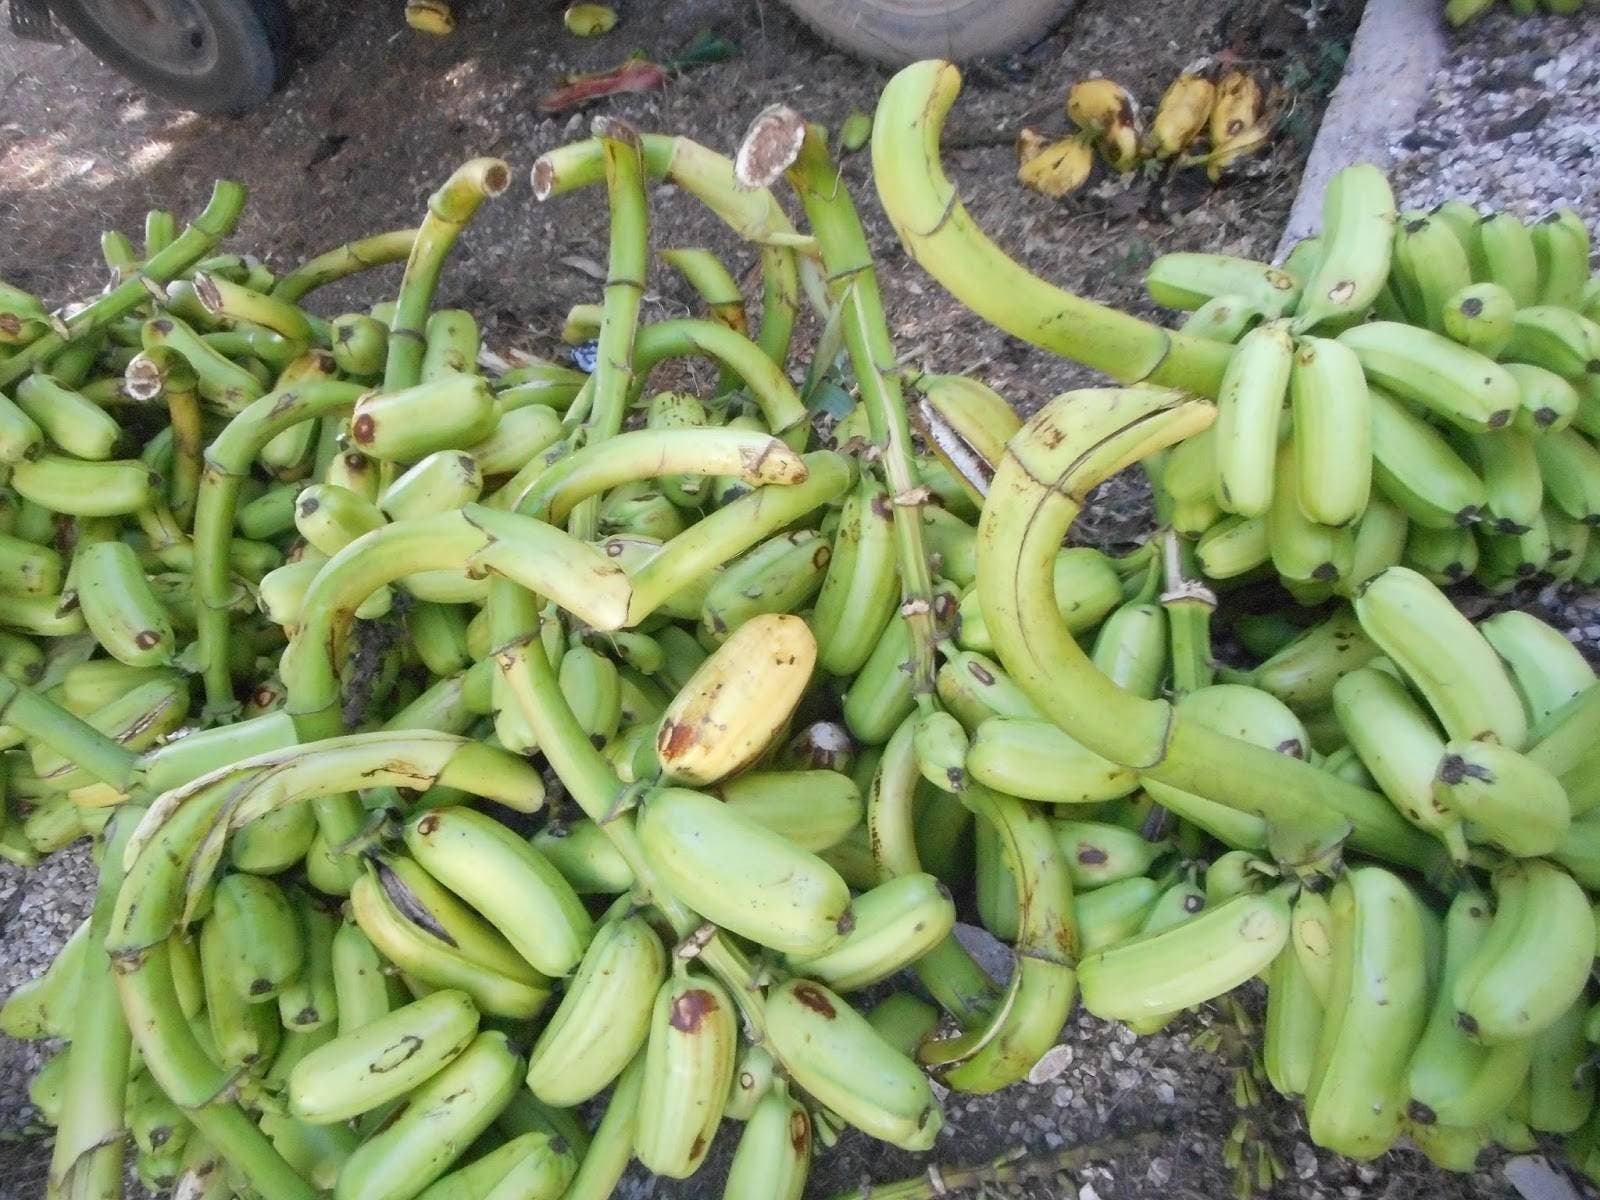 Anuncian venta de plátanos a 2 pesos y medio